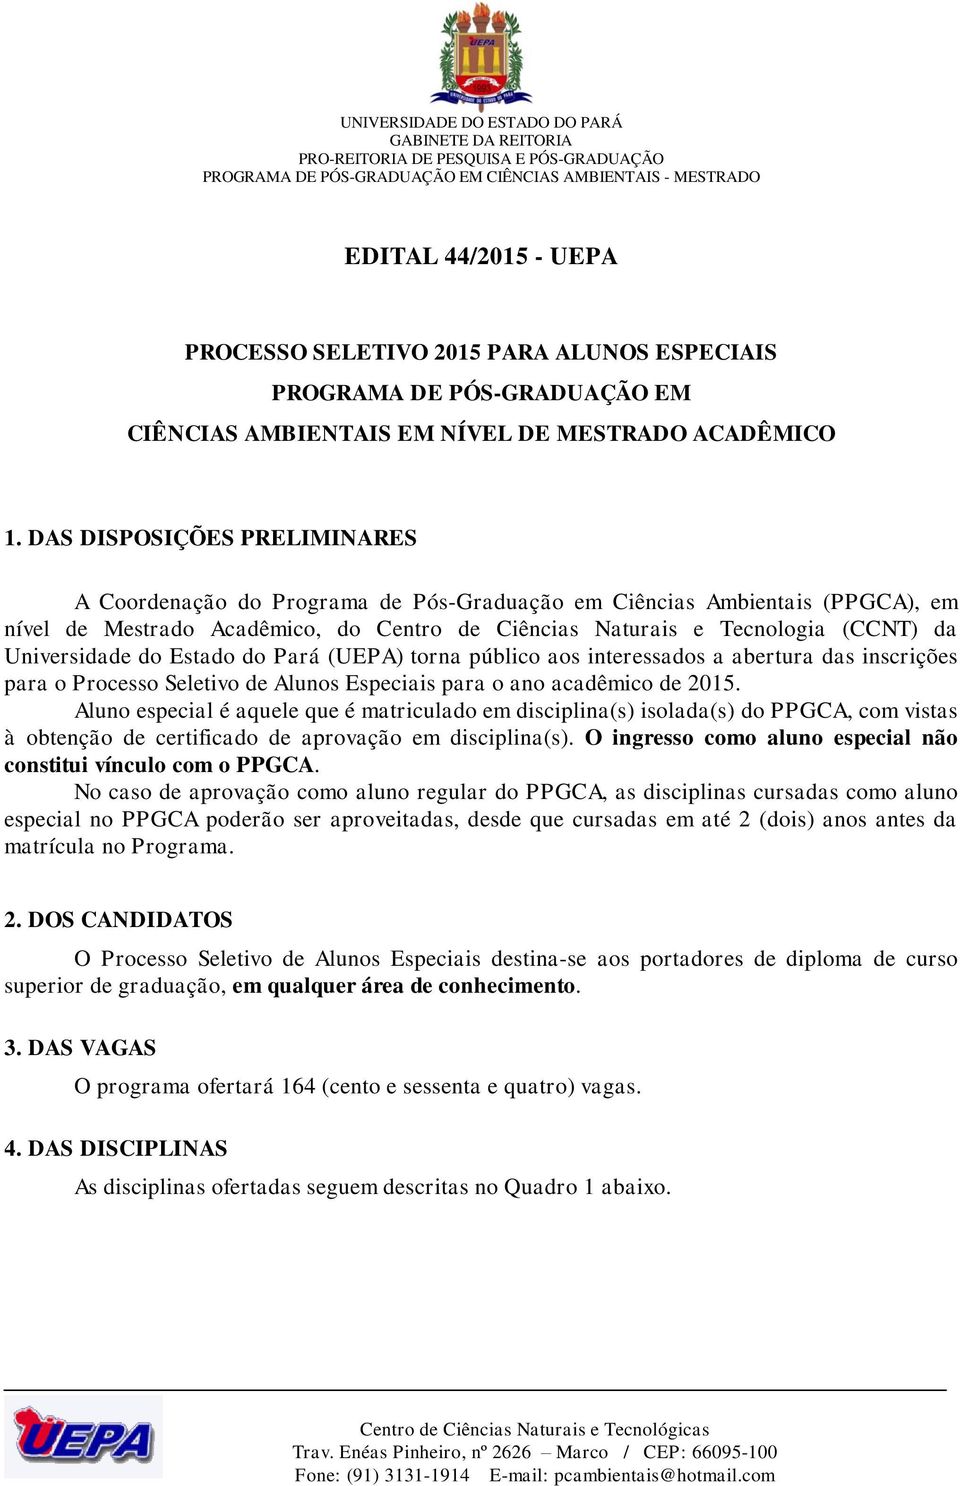 Universidade do Estado do Pará (UEPA) torna público aos interessados a abertura das inscrições para o Processo Seletivo de Alunos Especiais para o ano acadêmico de 2015.